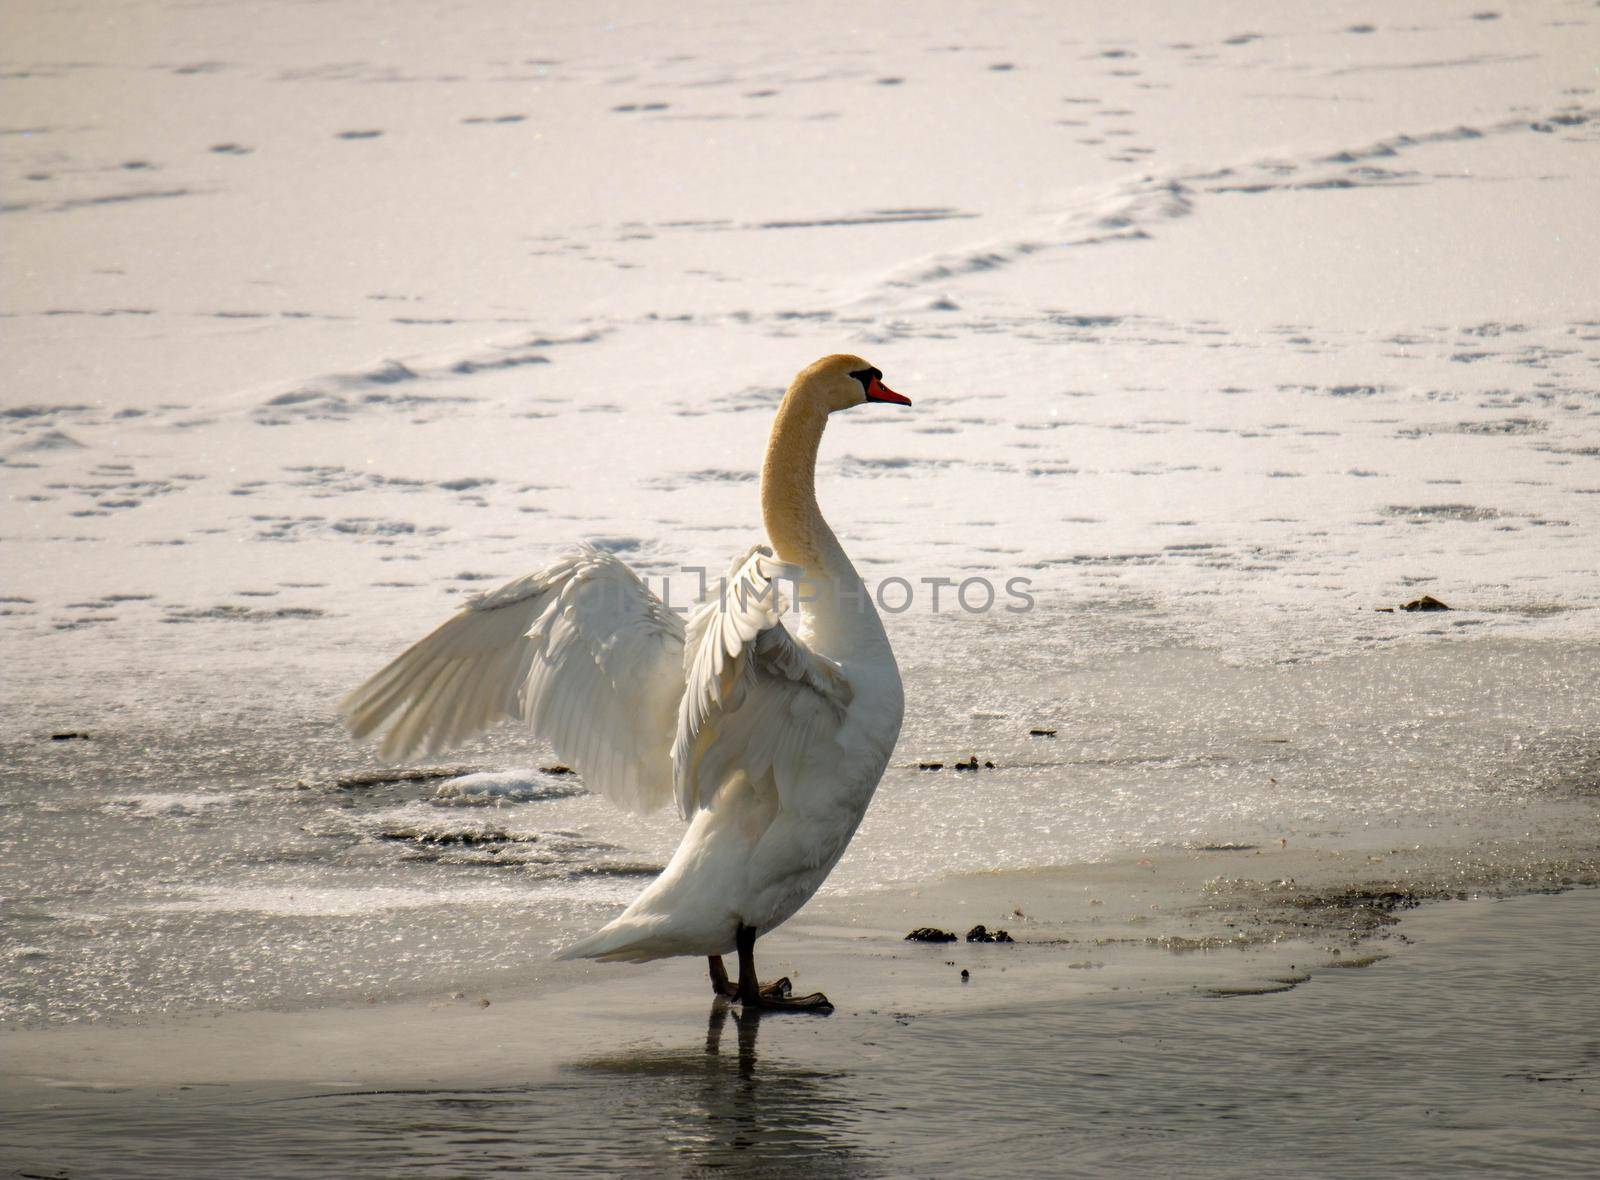 Mute swan, cygnus olor in a canadian pond in winter season  by mynewturtle1